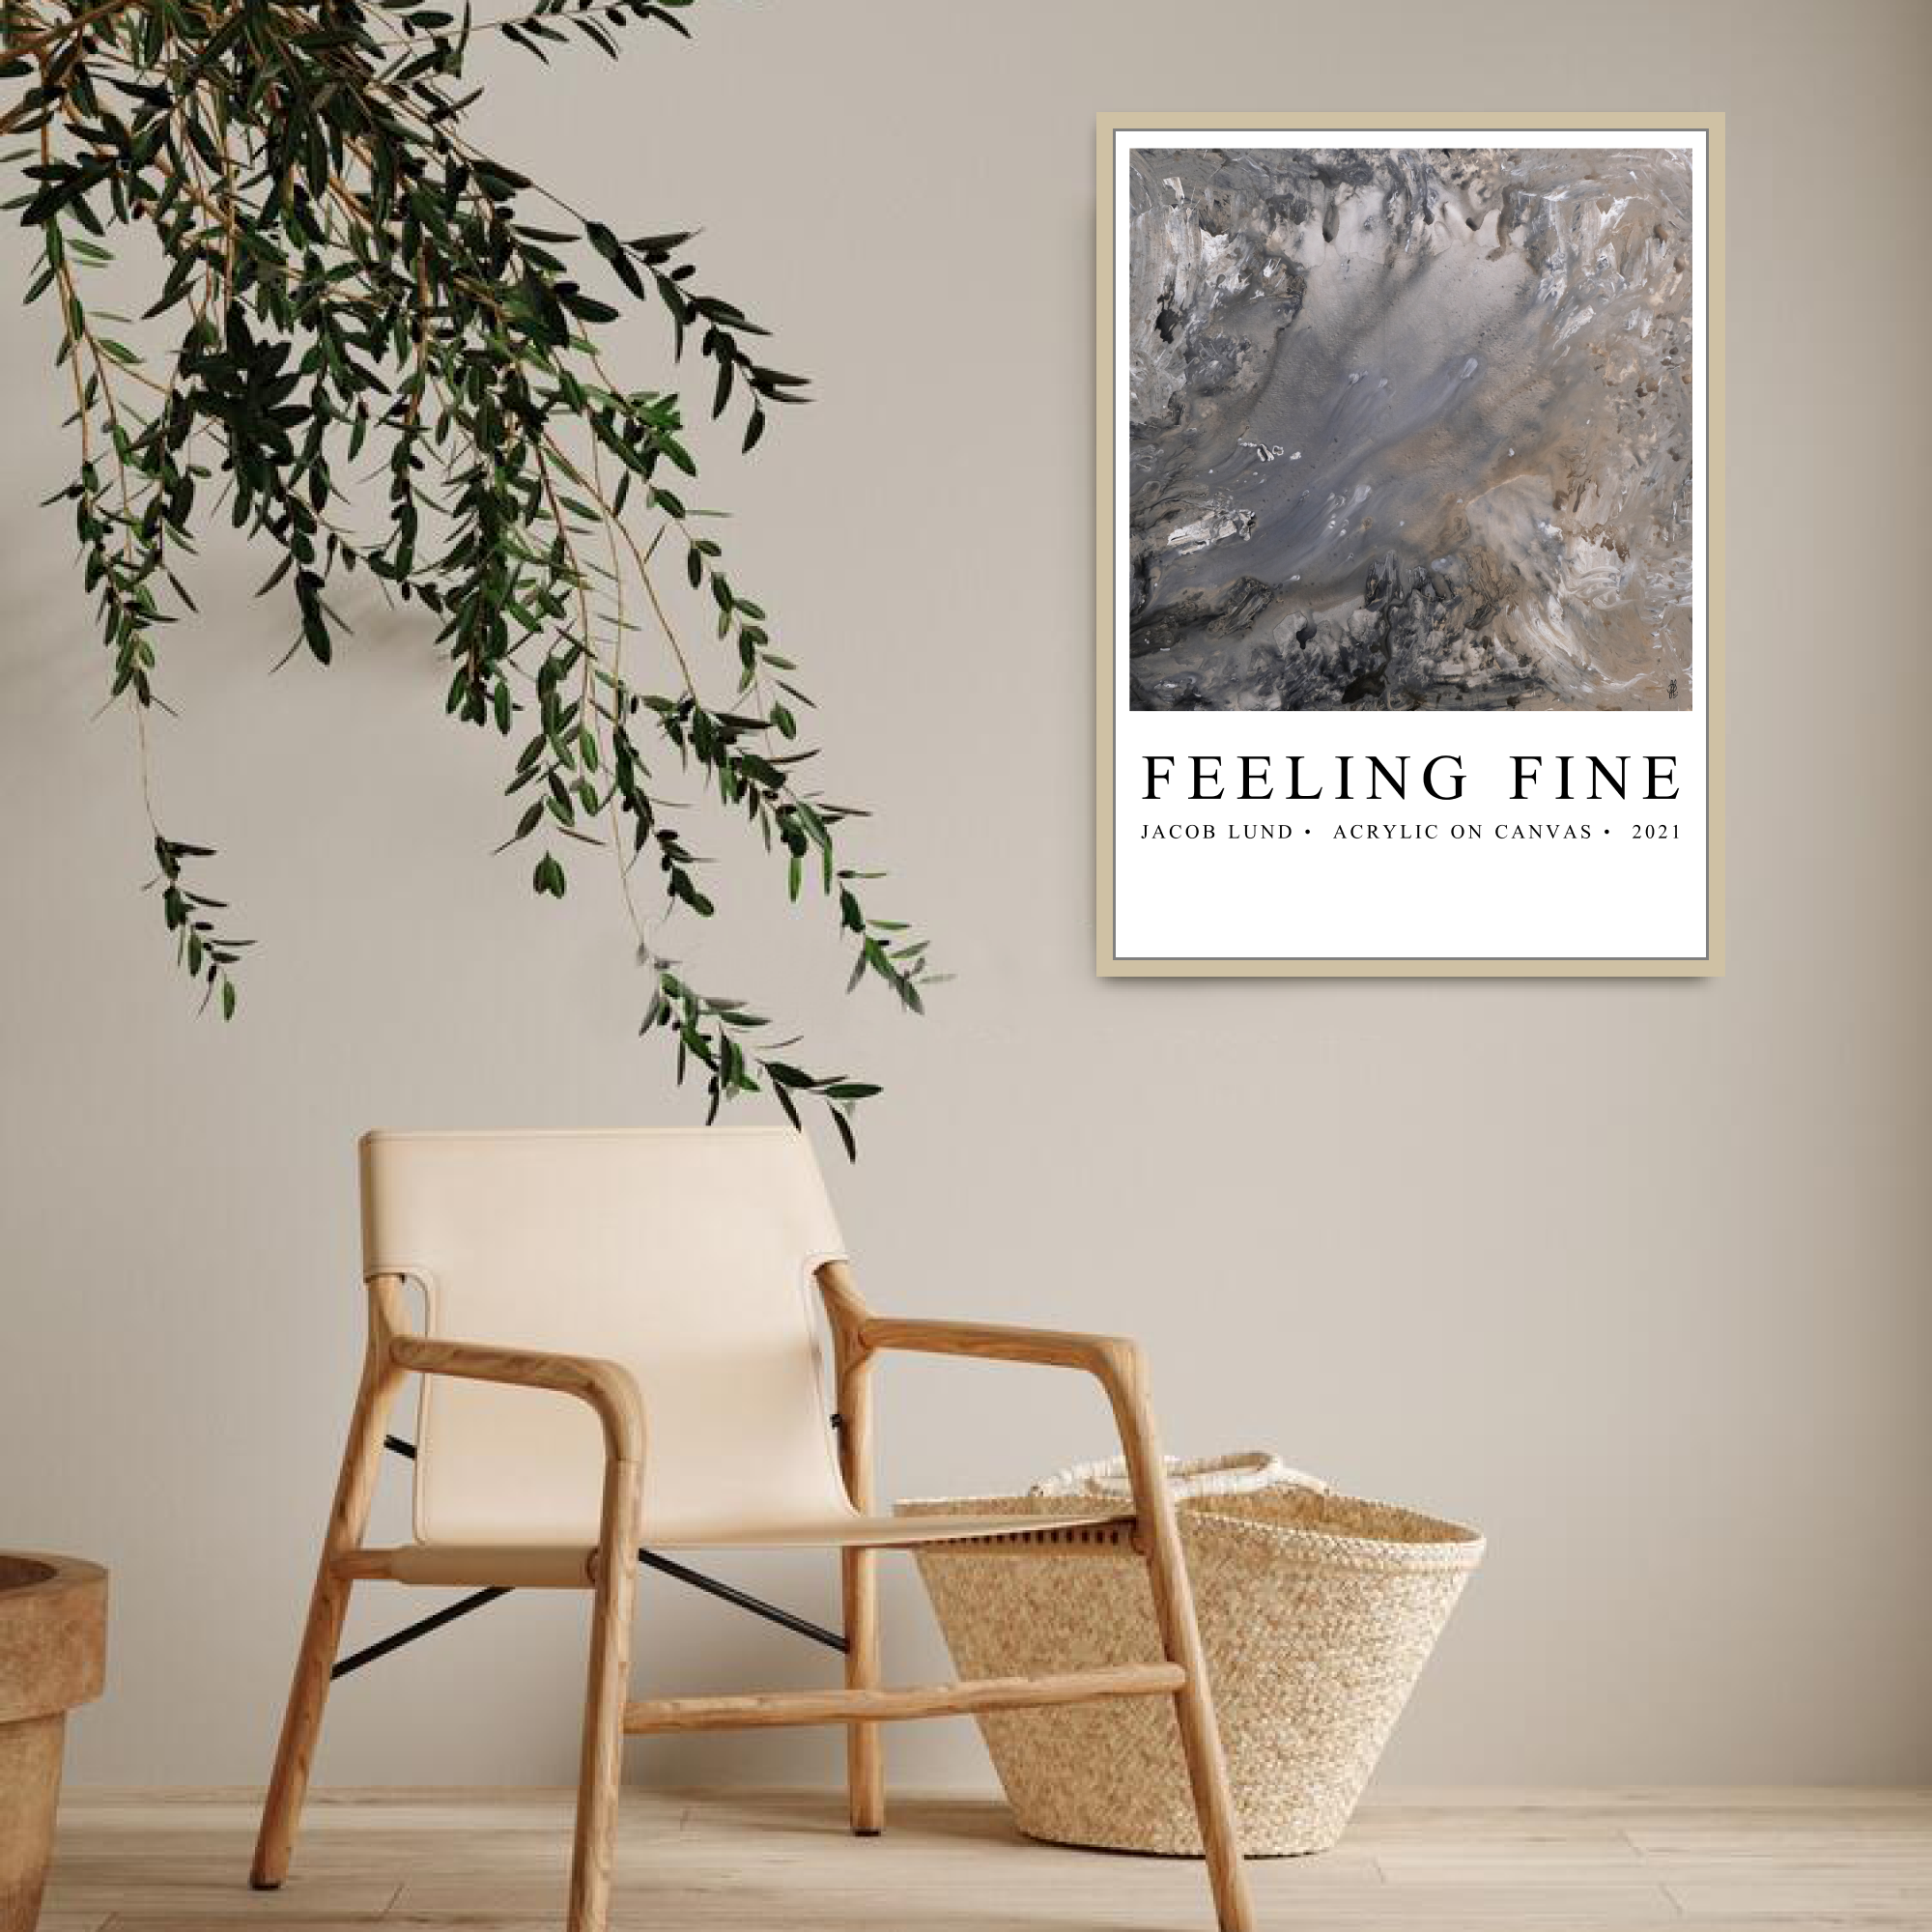 Poster: "Feeling Fine" (White background)